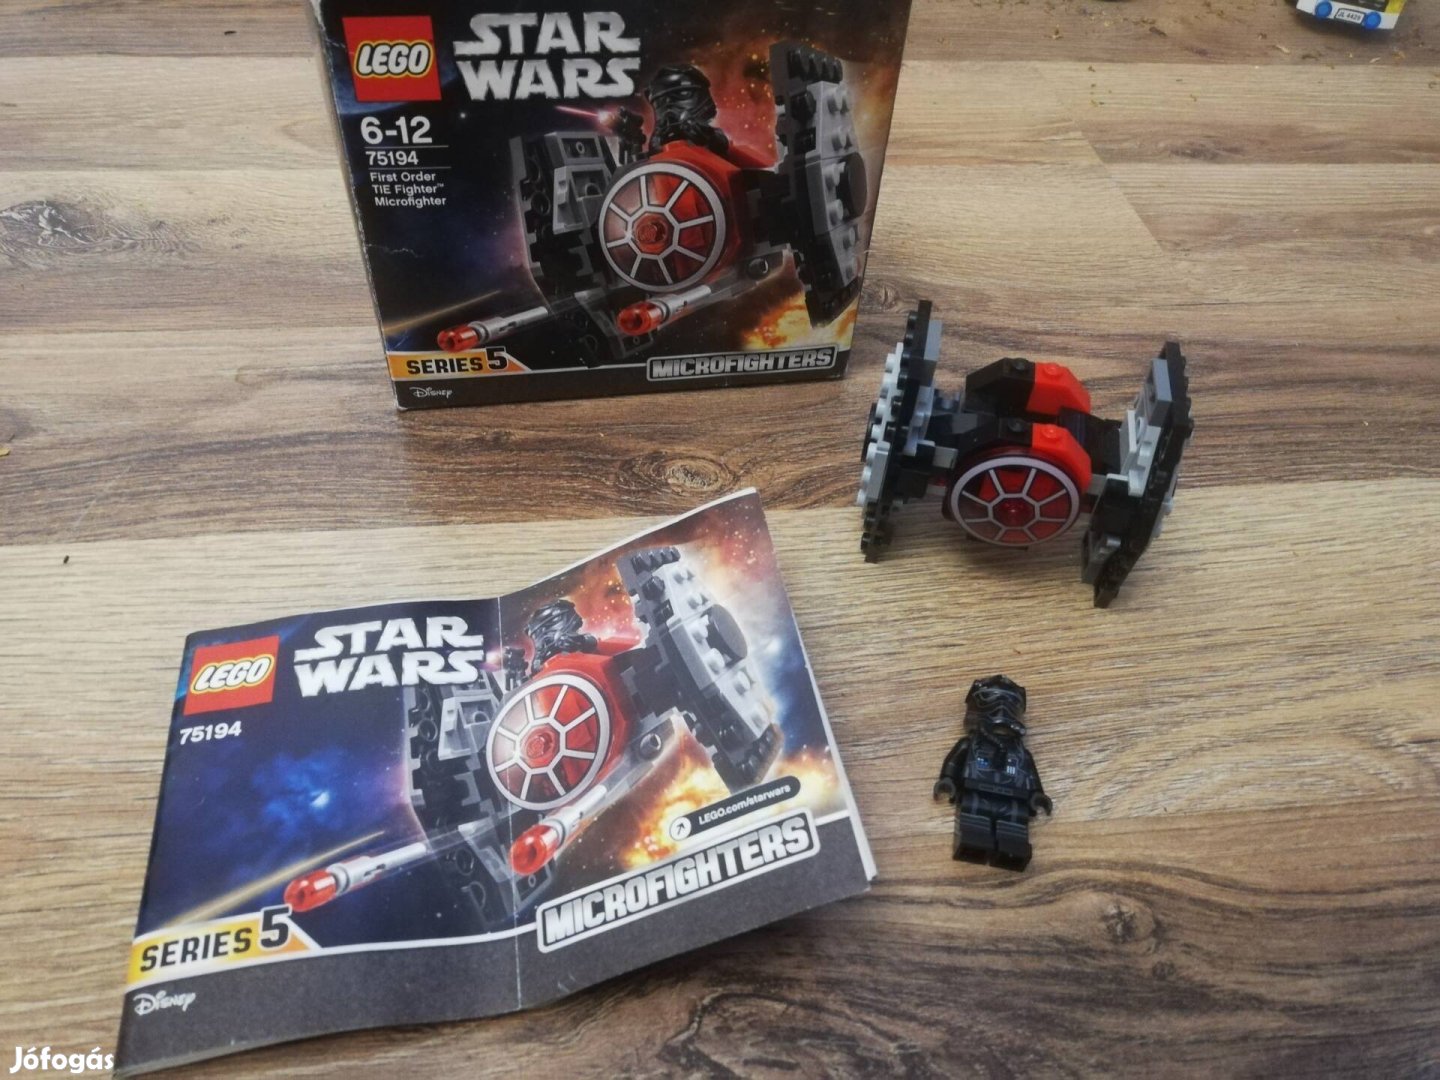 Lego Star Wars 75194